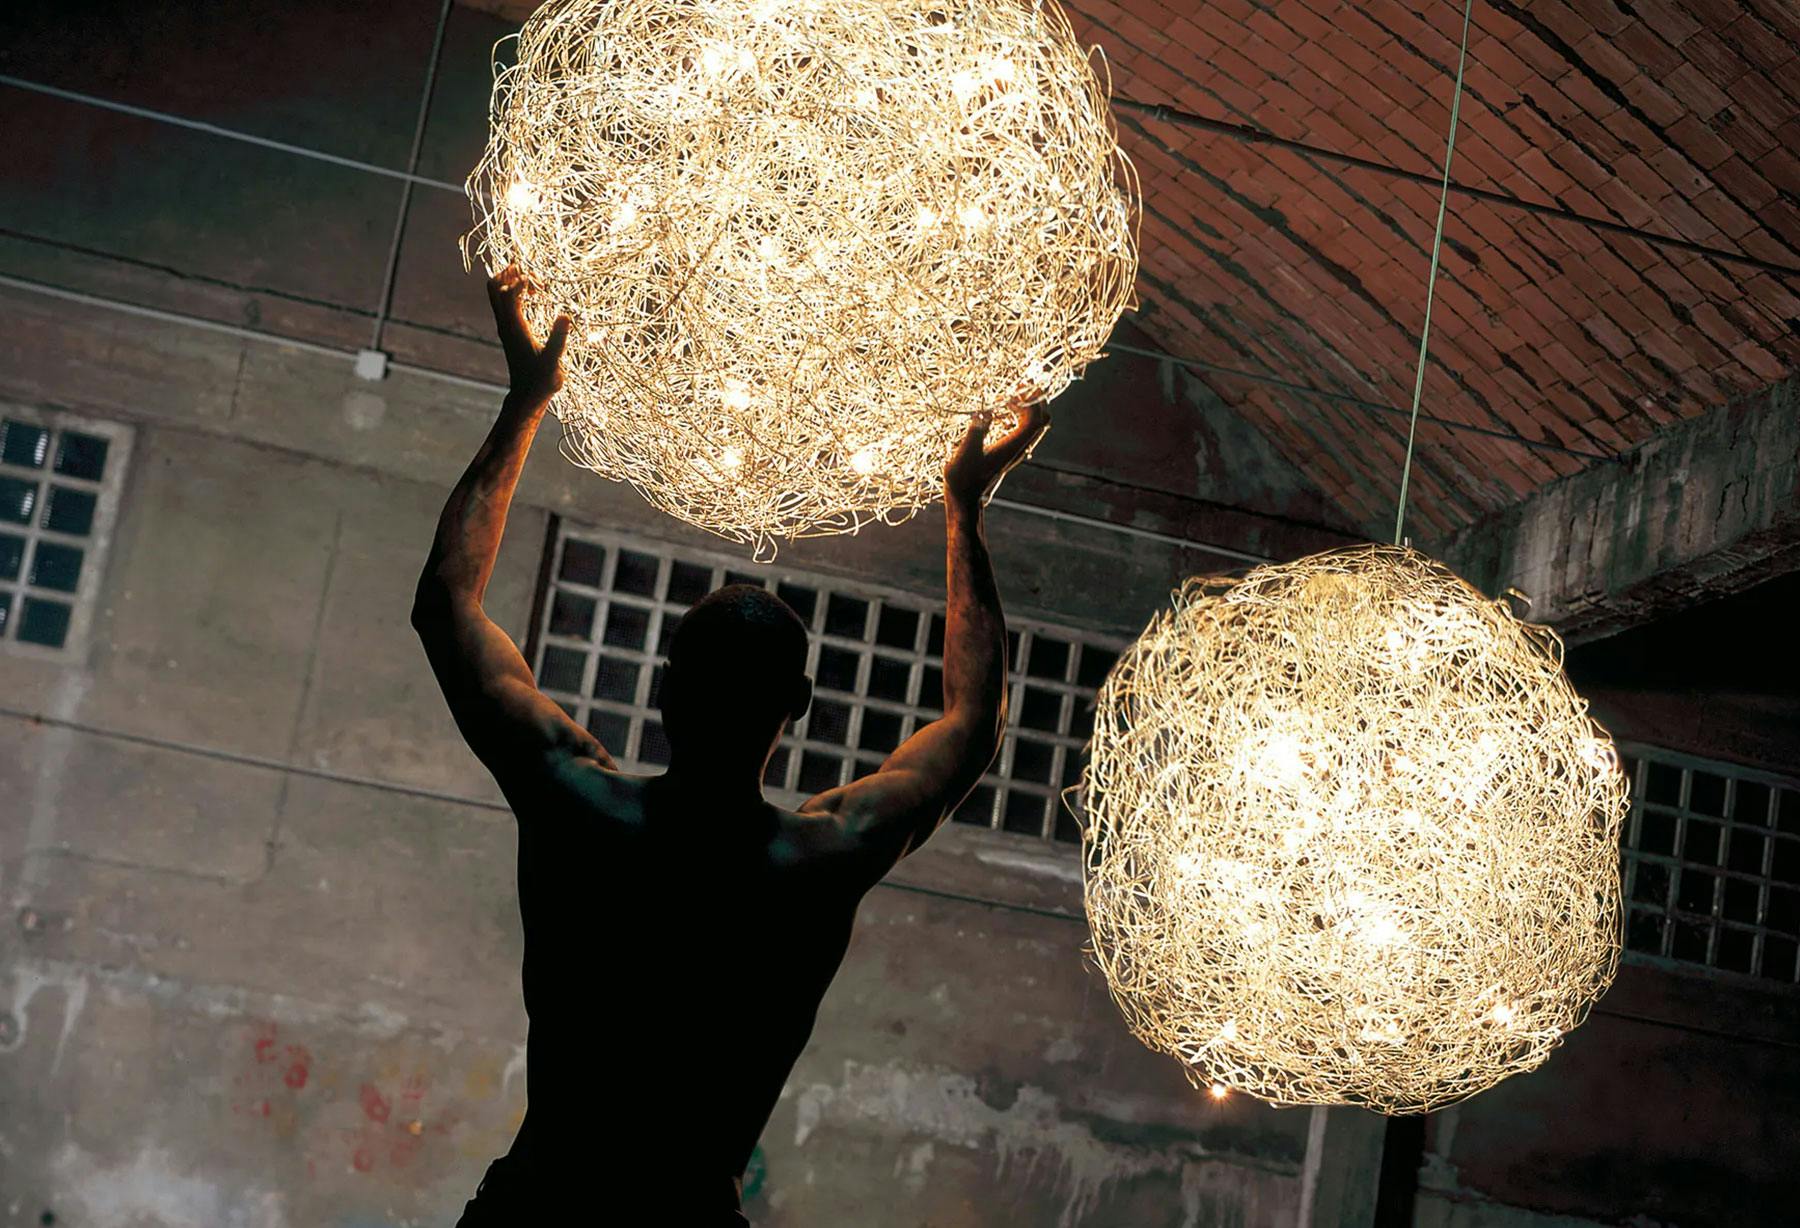 <p>La lampe la plus célèbre au monde, « Fil de Fer », a été sélectionnée pour représenter le Made in Italy et être exposée au sein du Pavillon italien à l’occasion de l’Exposition universelle de Shanghai 2010 pour faire ensuite son entrée dans la collection du musée de Shanghai, une fois sa construction achevée.</p>
